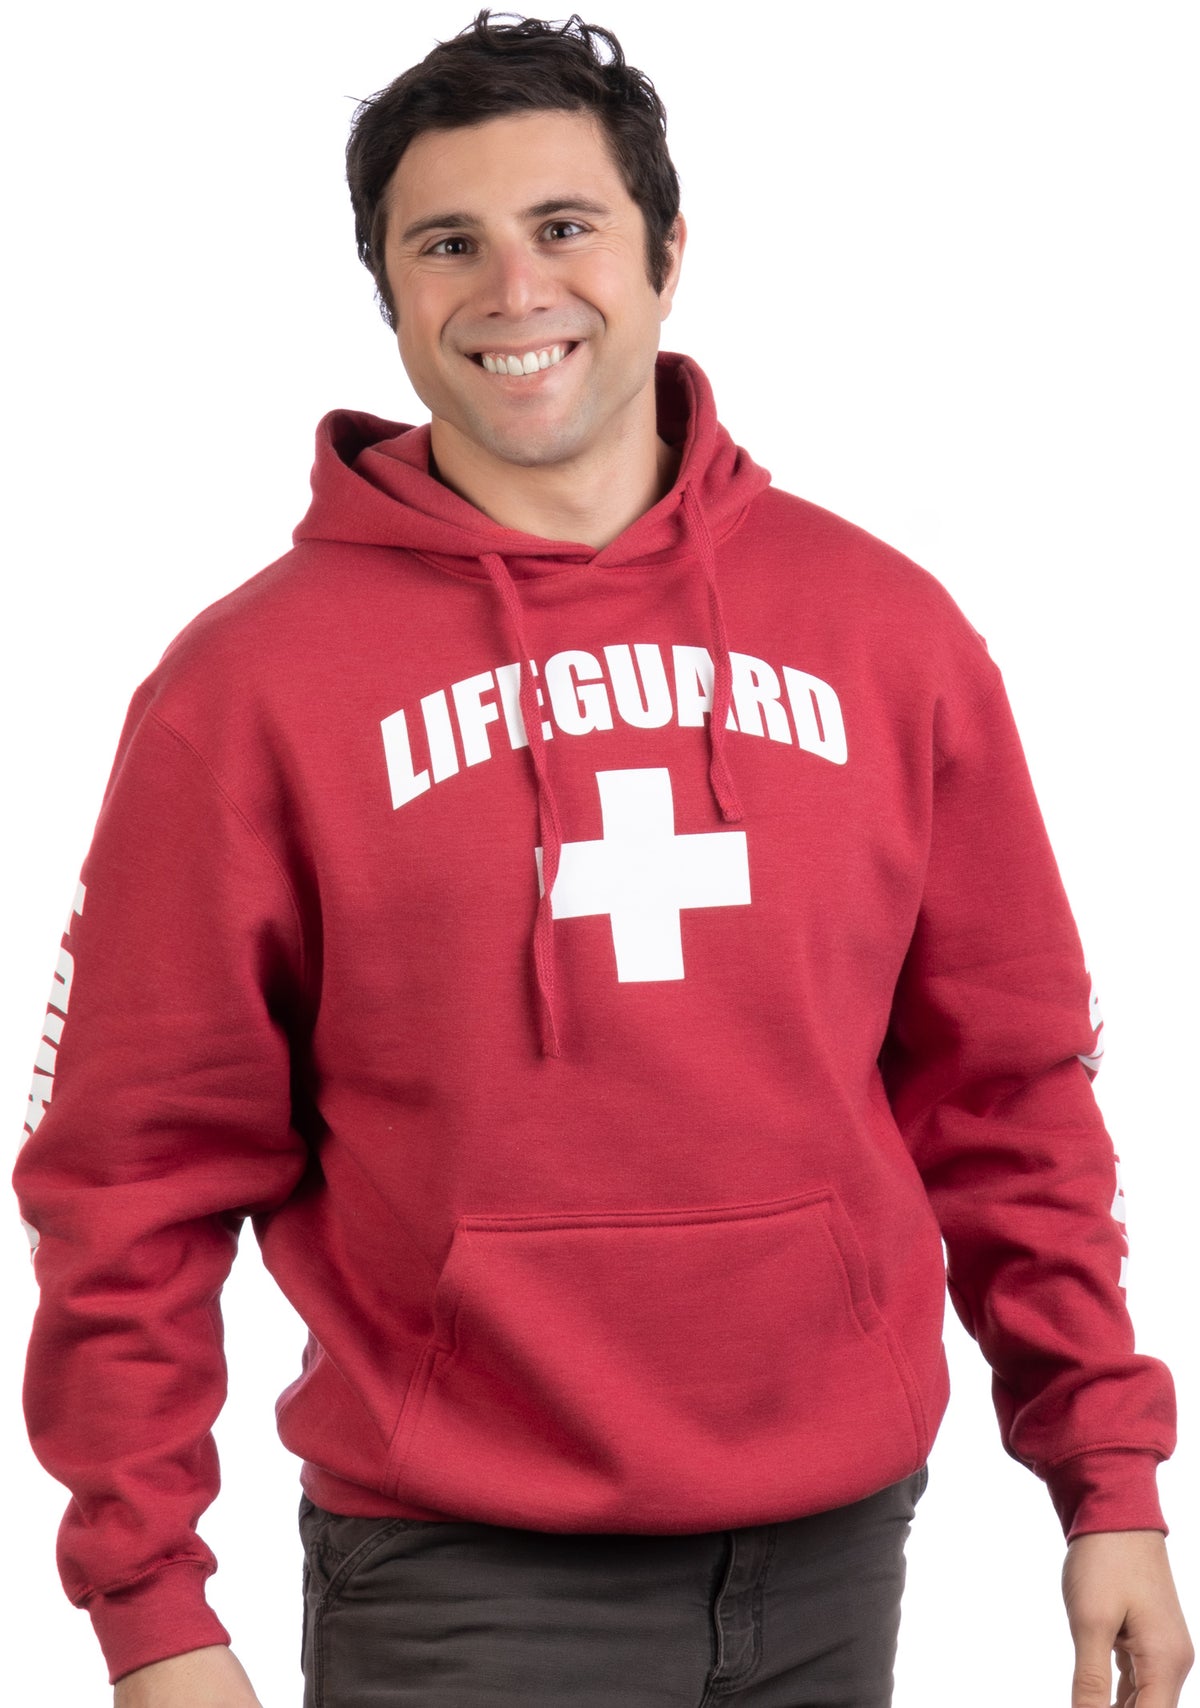 Lifeguard Sweatshirt  Red Lifeguard Unisex Sweatshirt